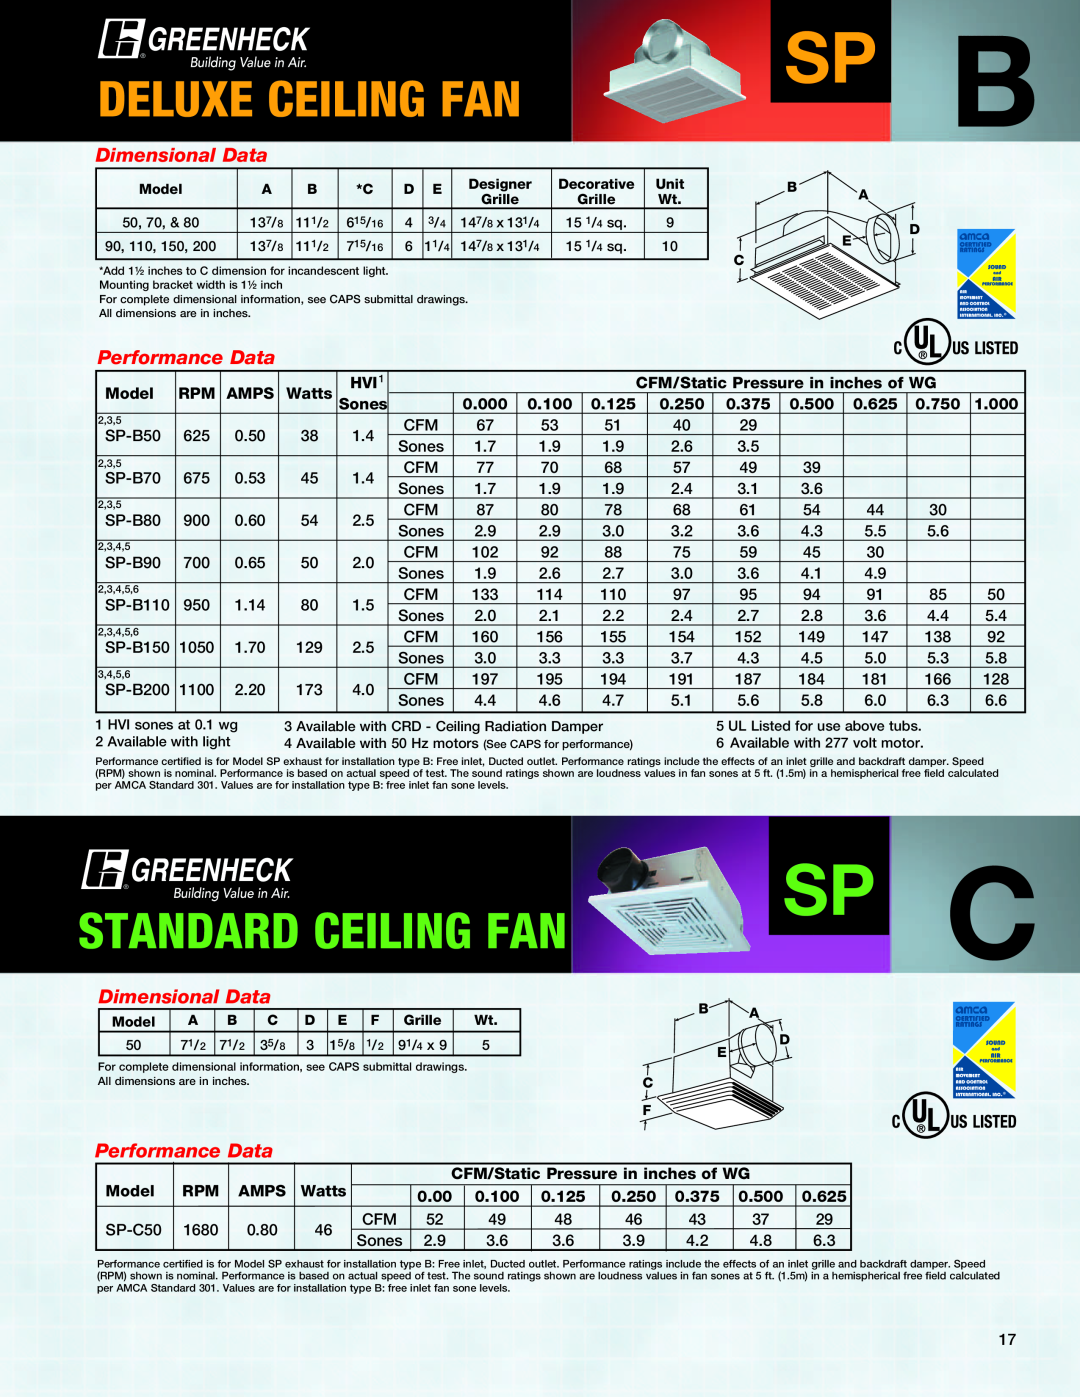 Greenheck Fan CSP manual Sp B, Sp C, Deluxe Ceiling Fan, Standard Ceiling Fan, Dimensional Data, Performance Data 